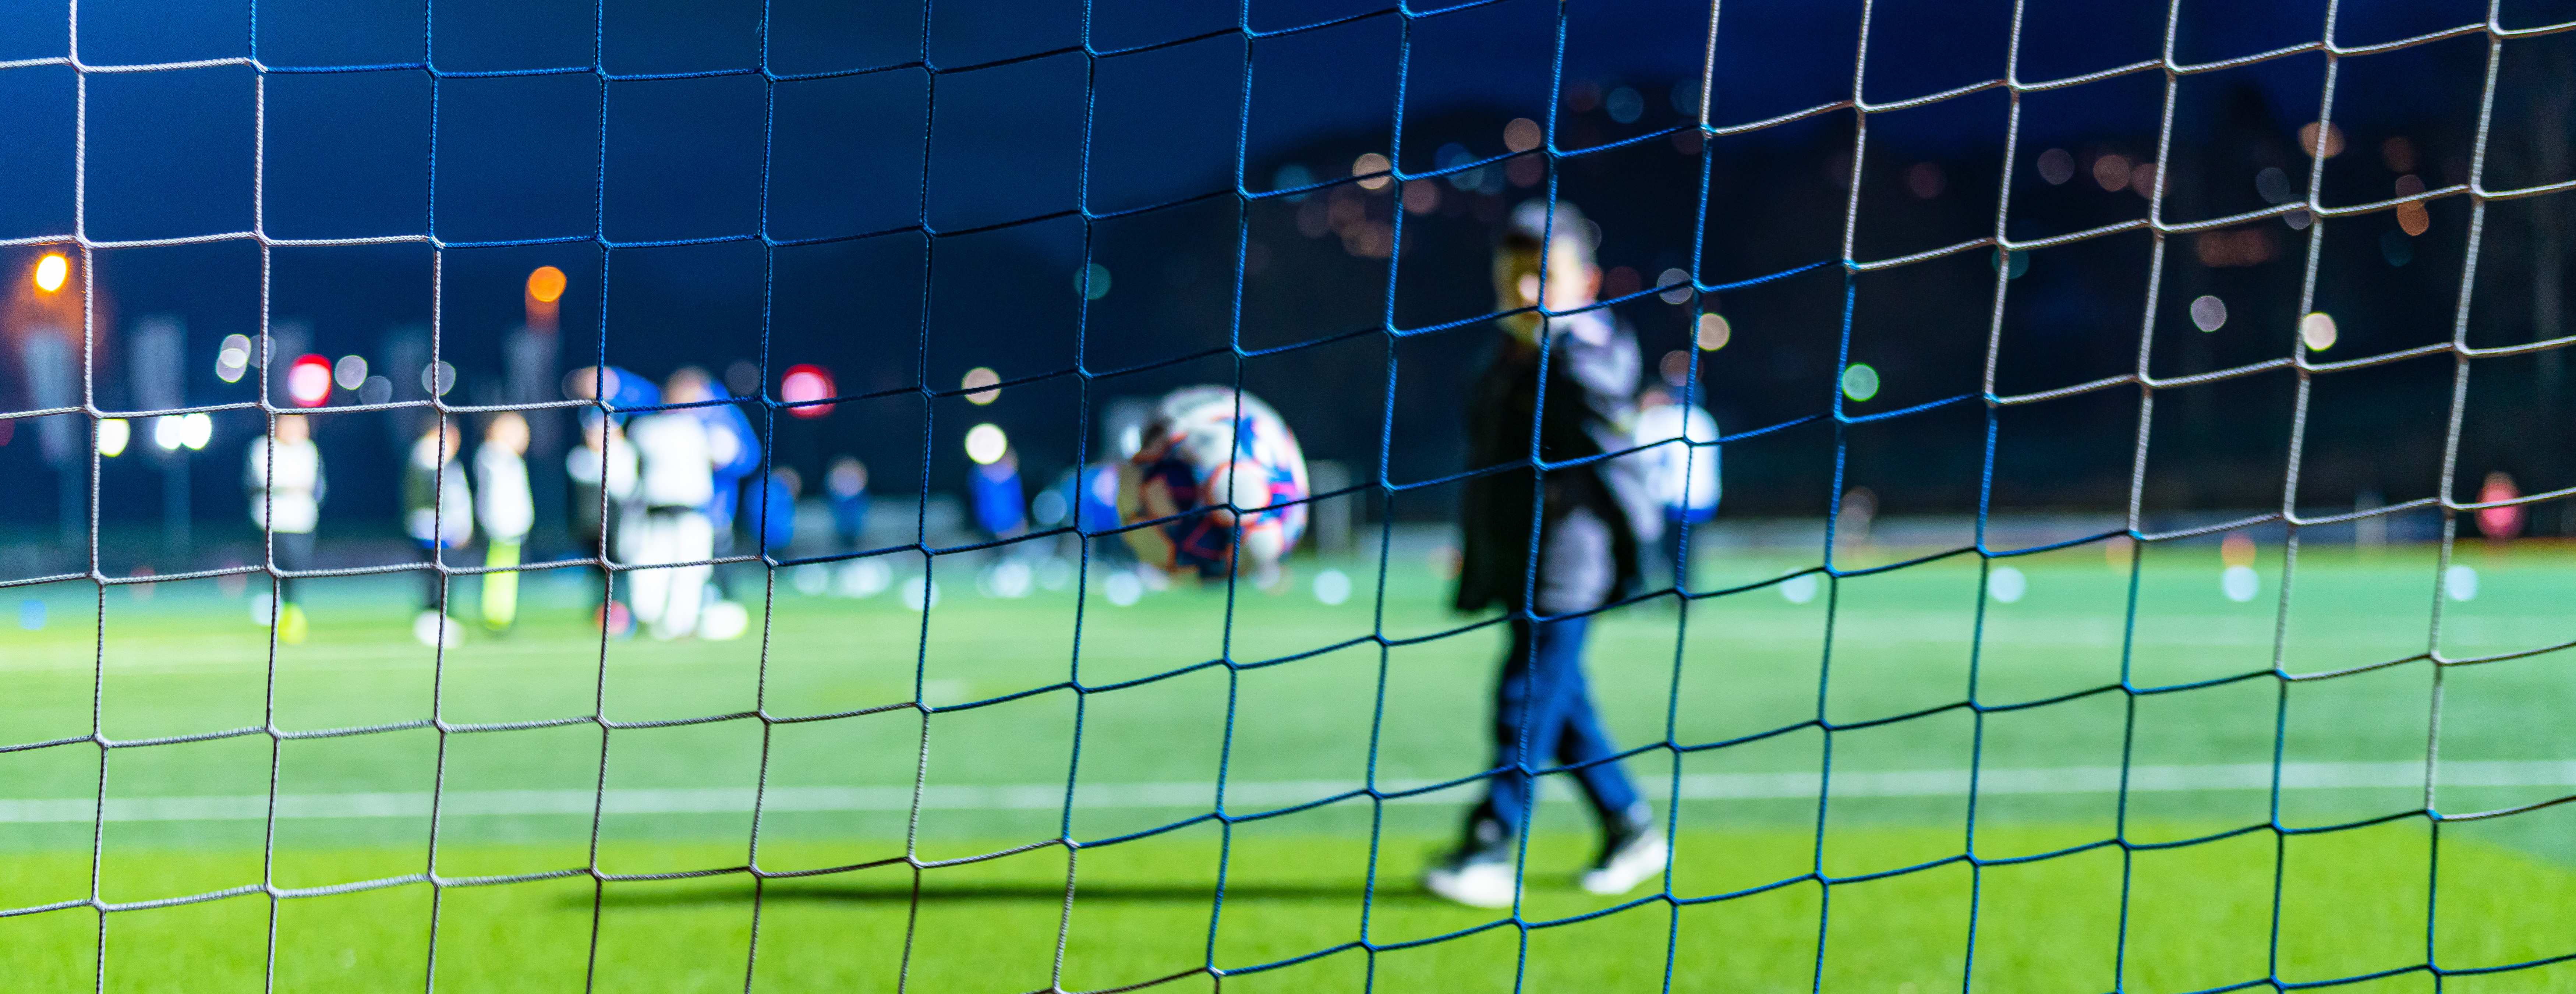 Symbolbild eines Fußballtores auf einem Spielfeld. Foto Jakob Studnar